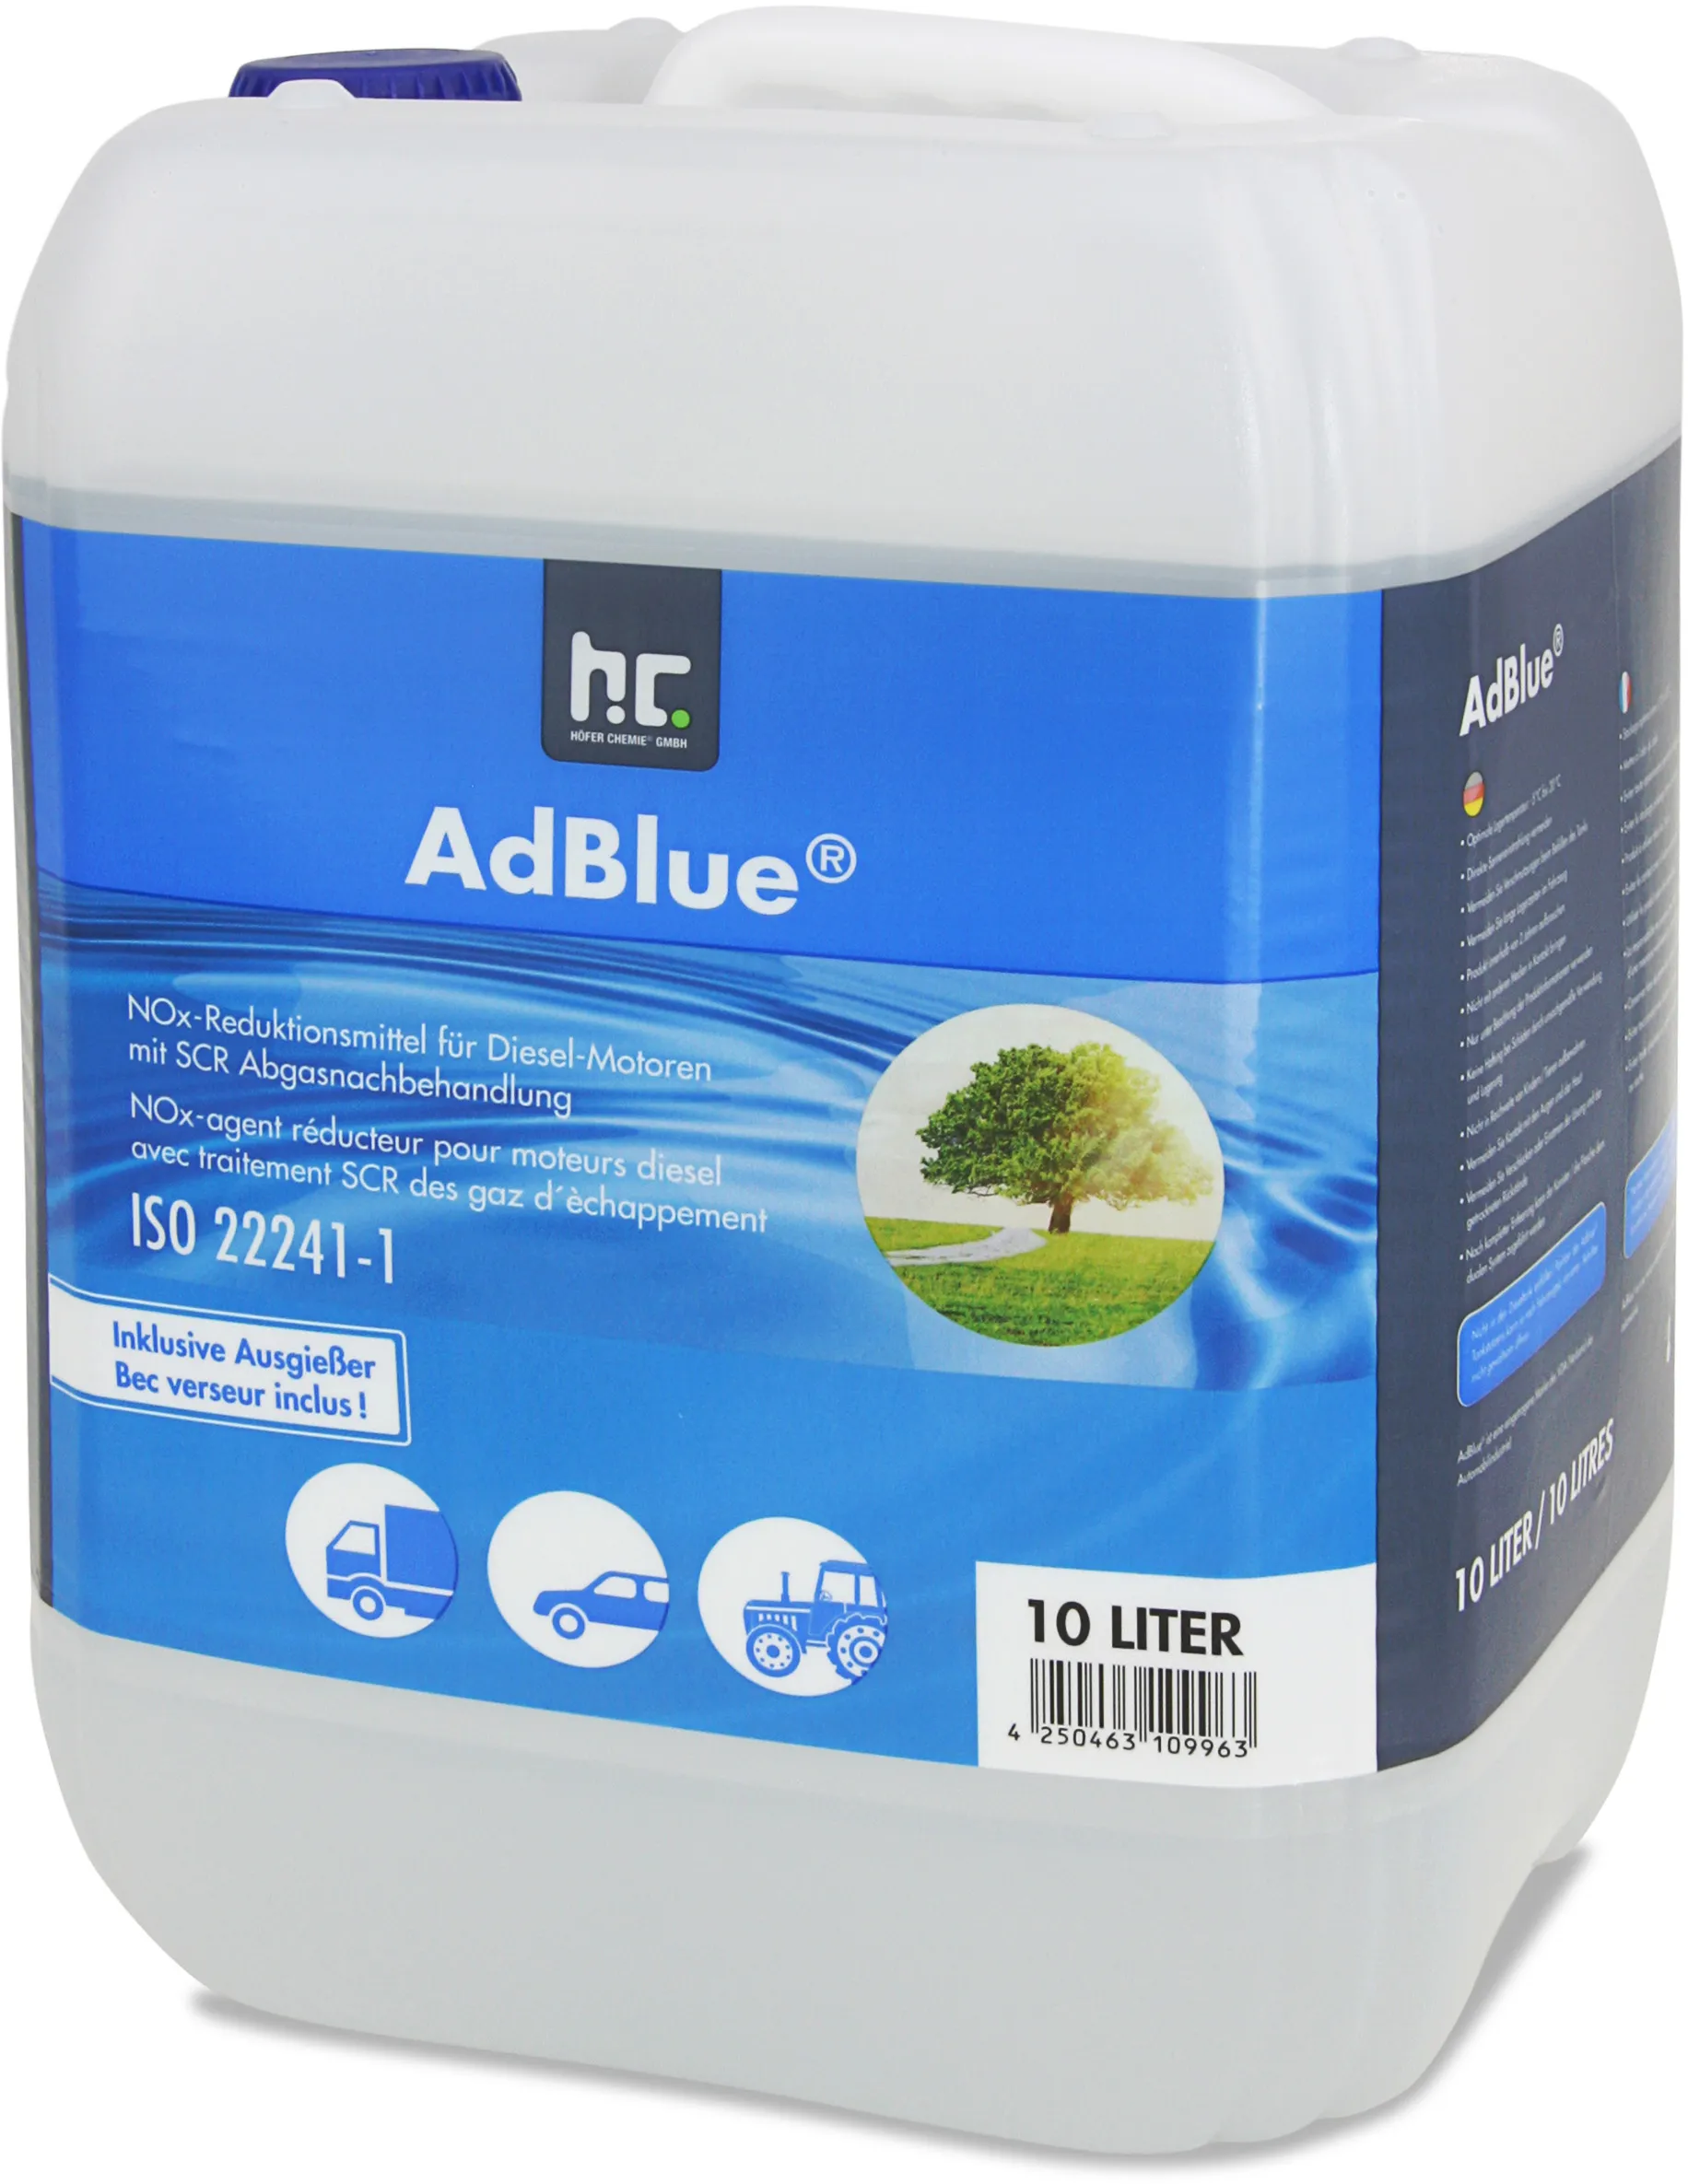 2 x 10L AdBlue - l'écologie par Höfer Chemie